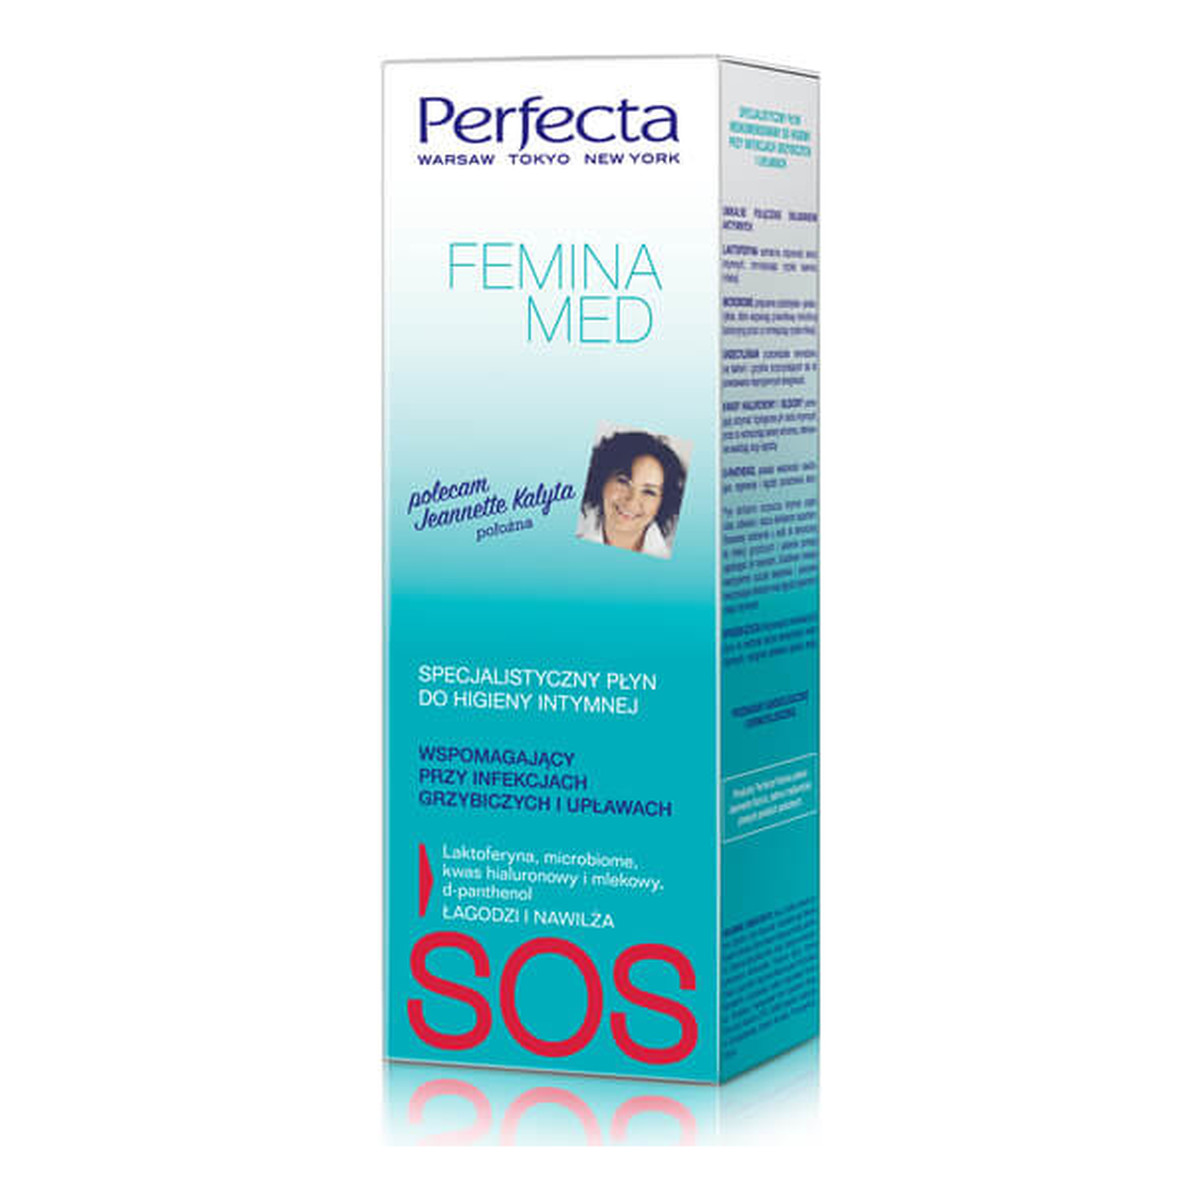 Perfecta FEMINA Med specjalistyczny płyn wspomagający przy infekcjach grzybiczych i upławach do higieny intymnej 250ml